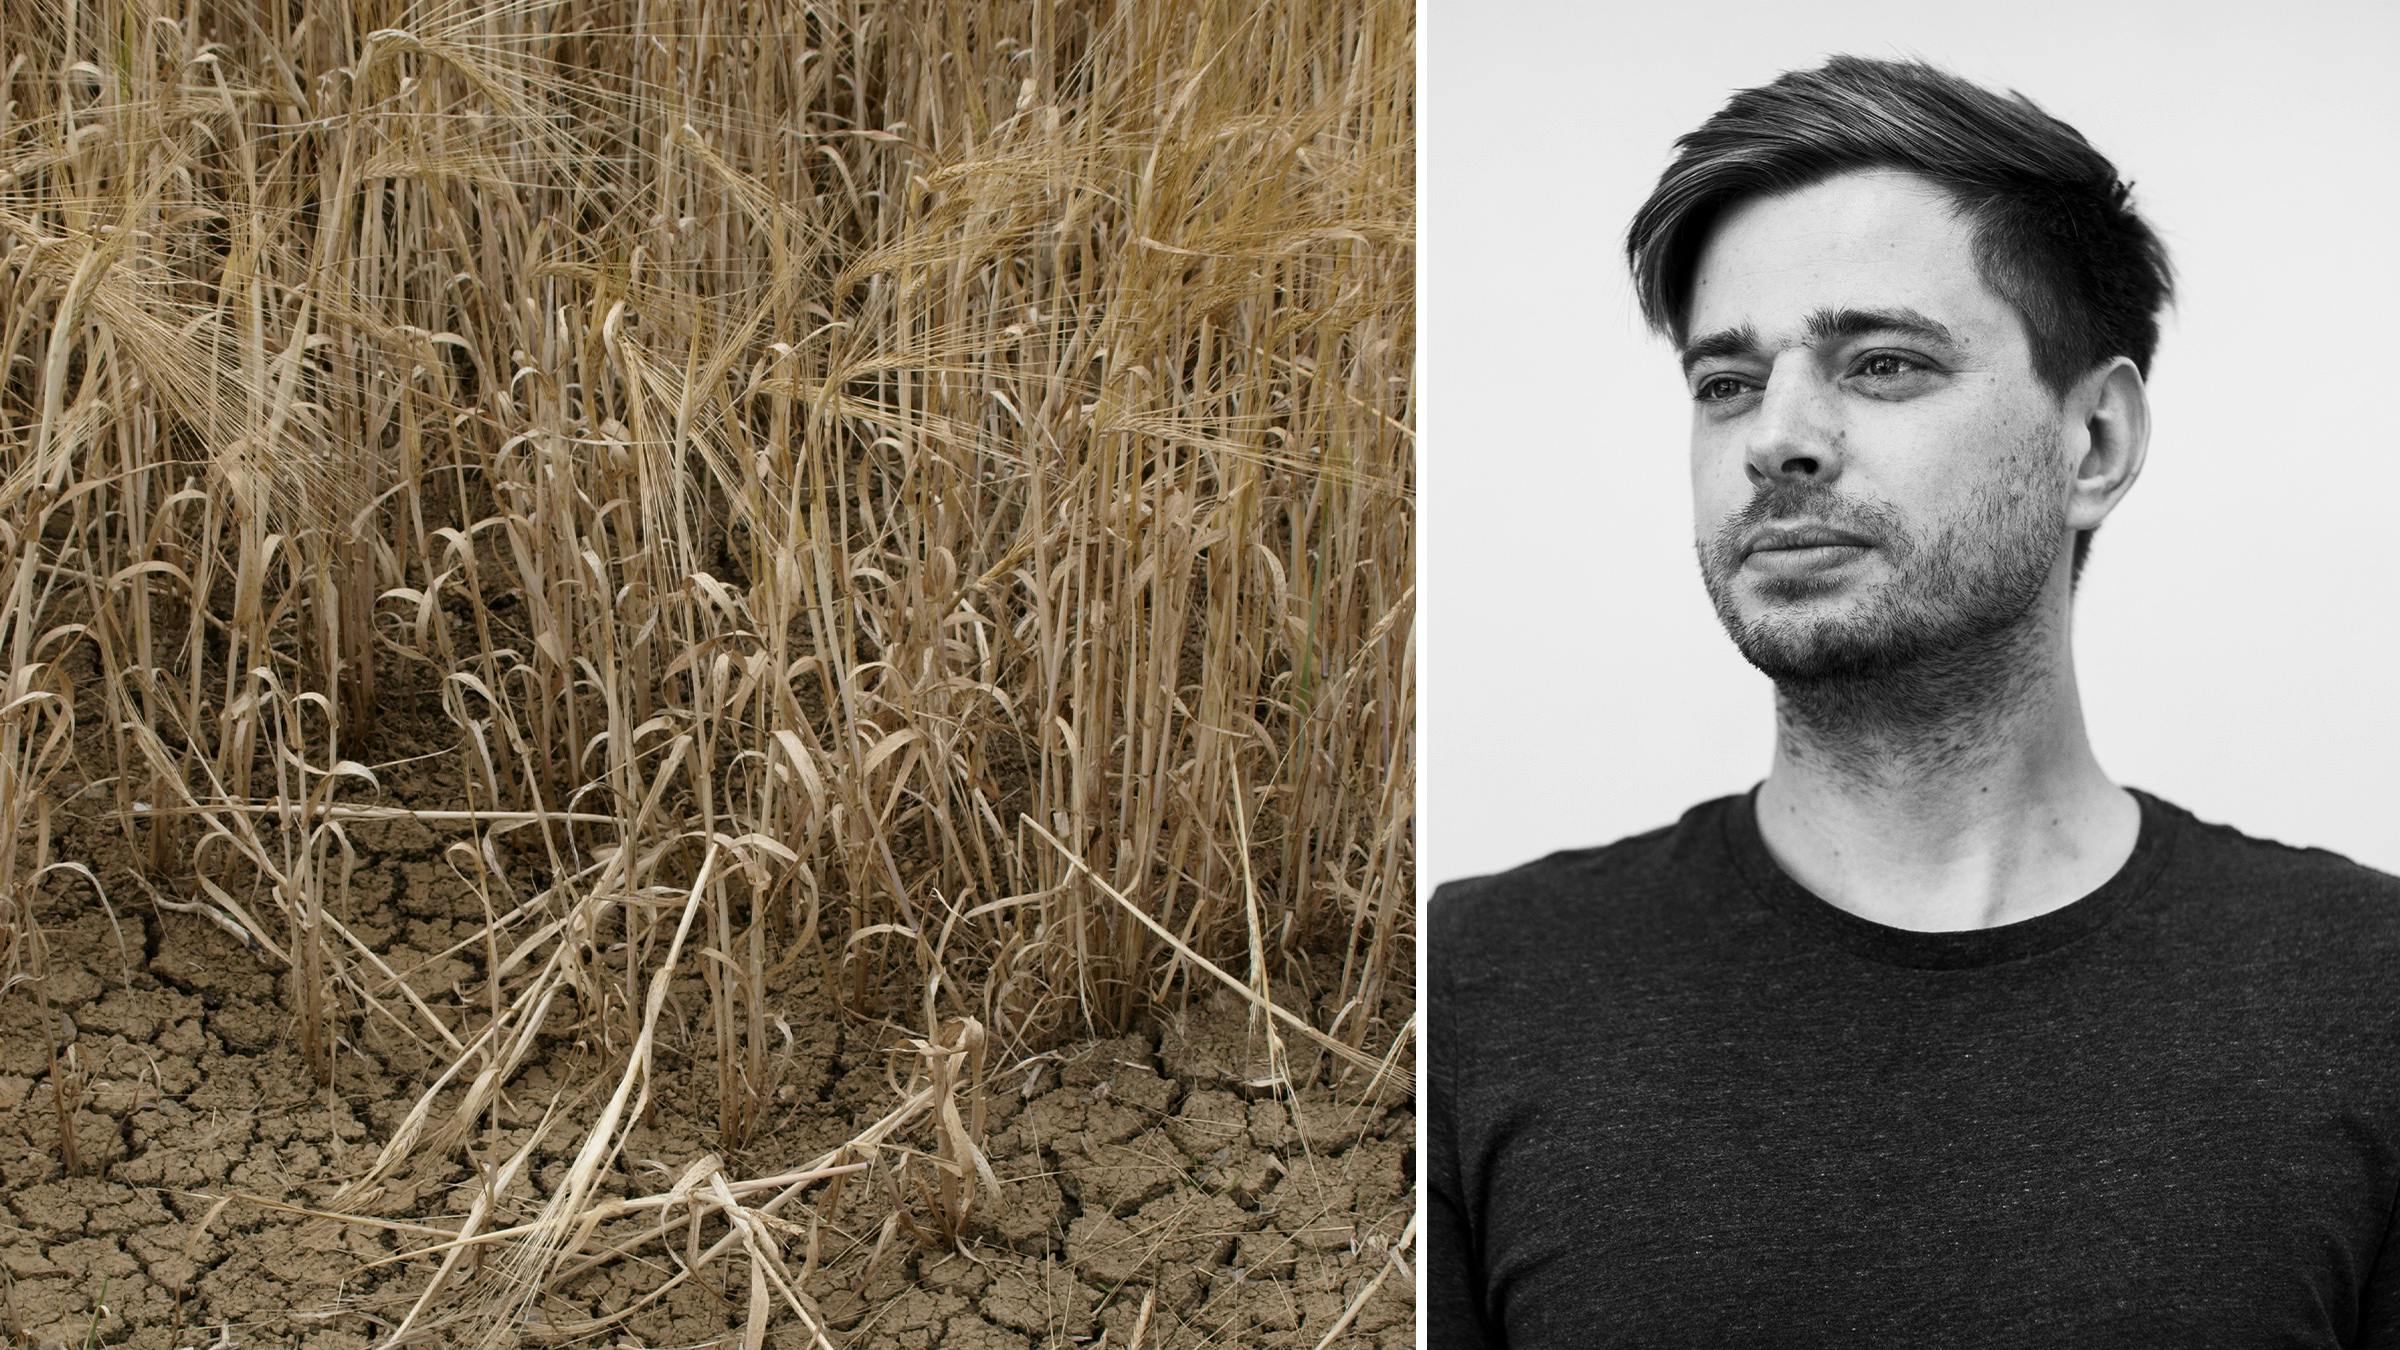 Links: Weizen auf trockenem Boden. Rechts: Ein Portrait von Rico